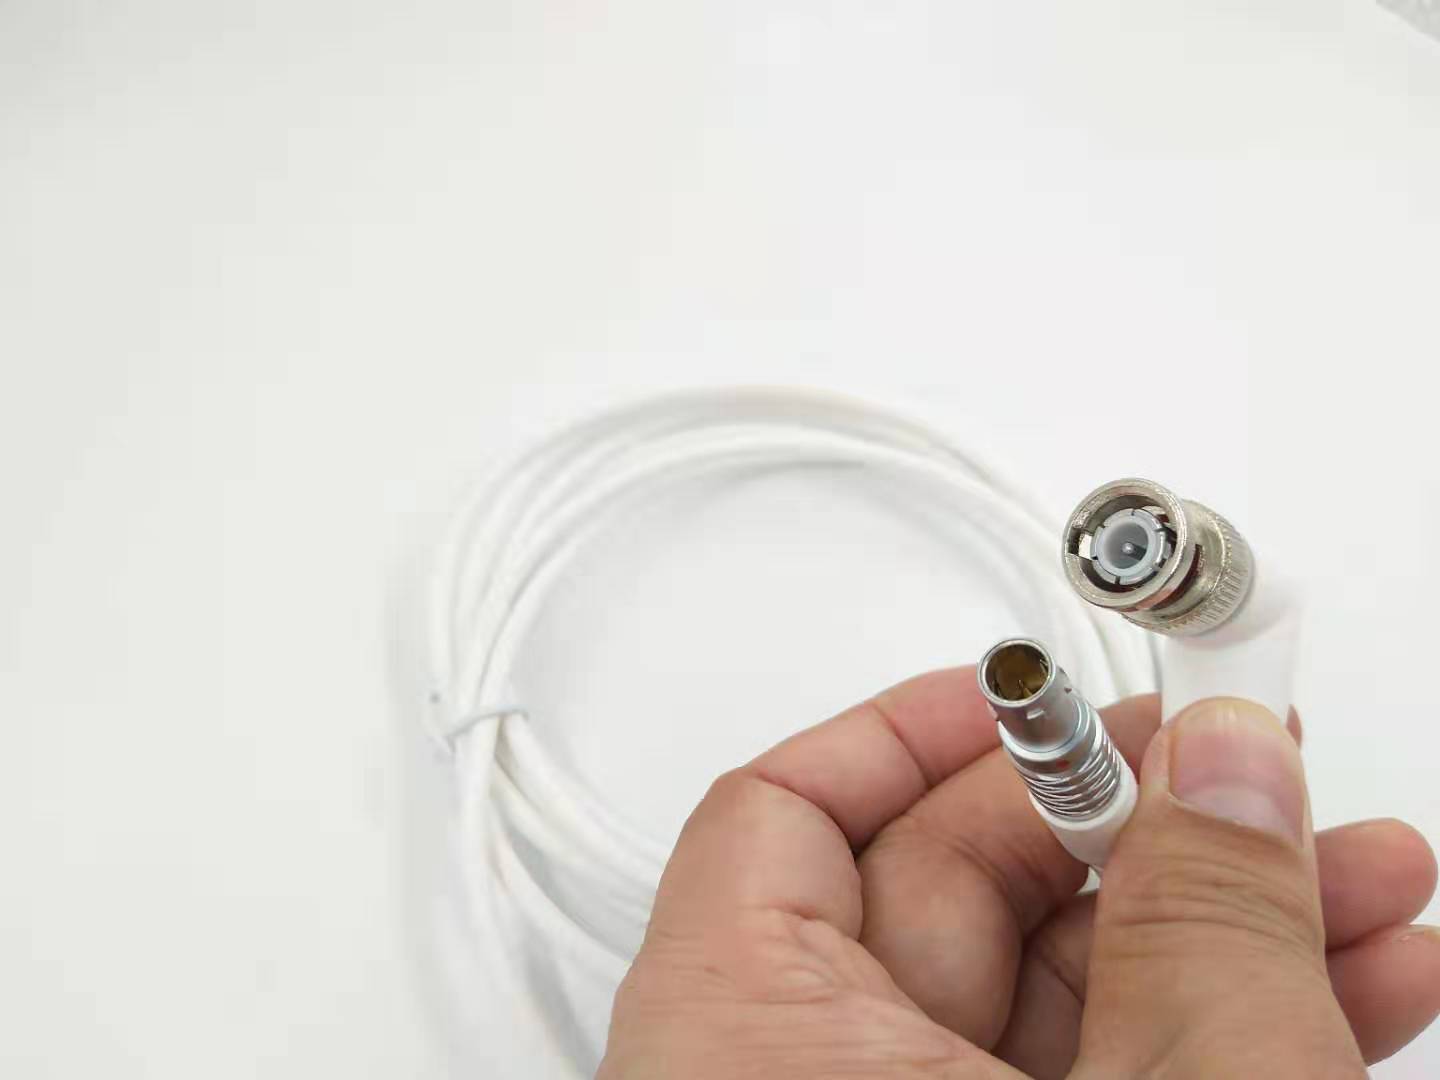 M9推拉式连接器的电缆